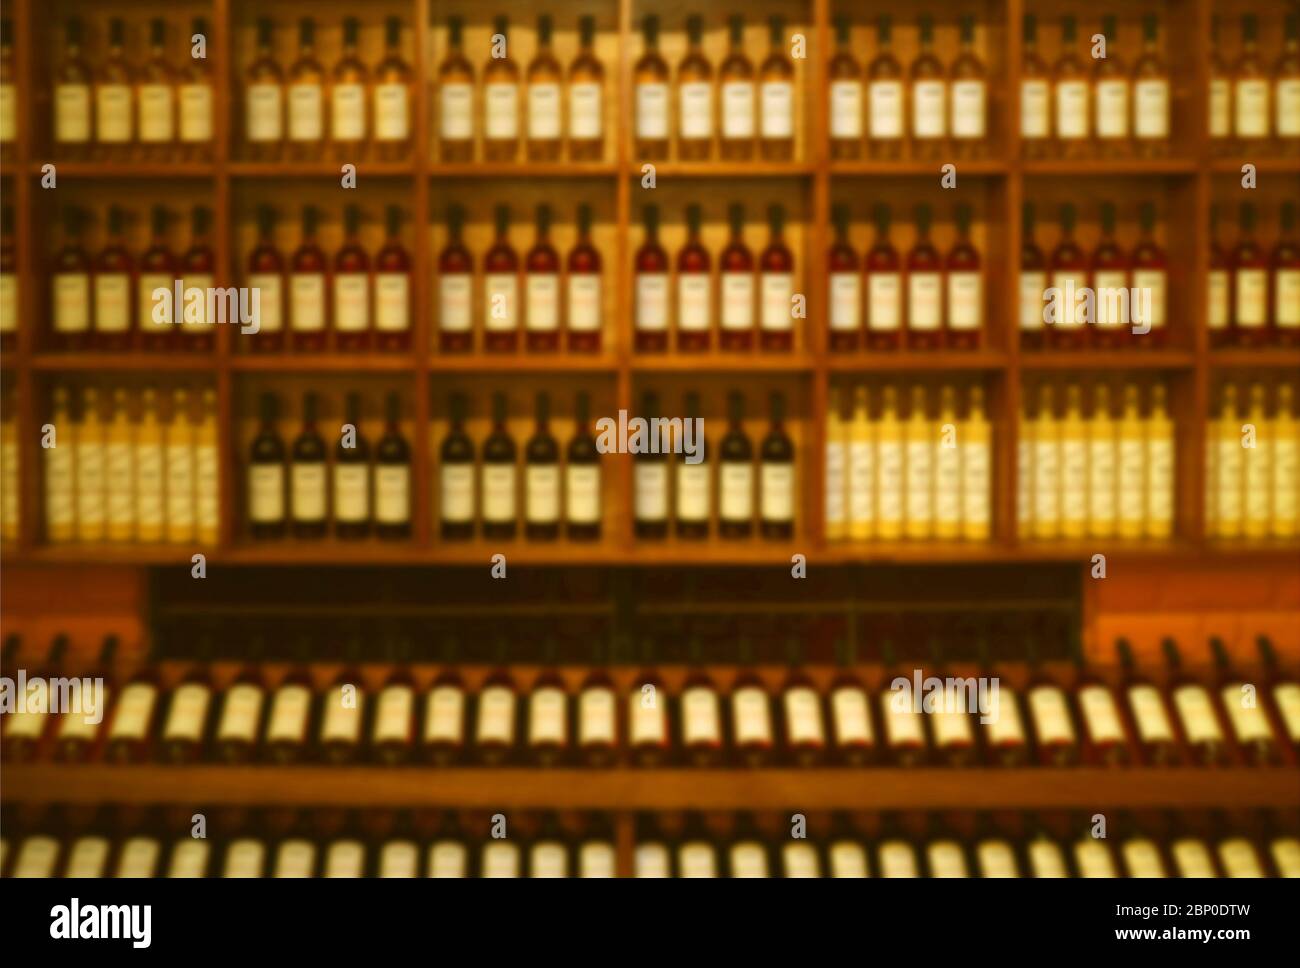 Astratto sfocato di bottiglie di vino visualizzate su scaffale di legno per sfondo o carta da parati Foto Stock